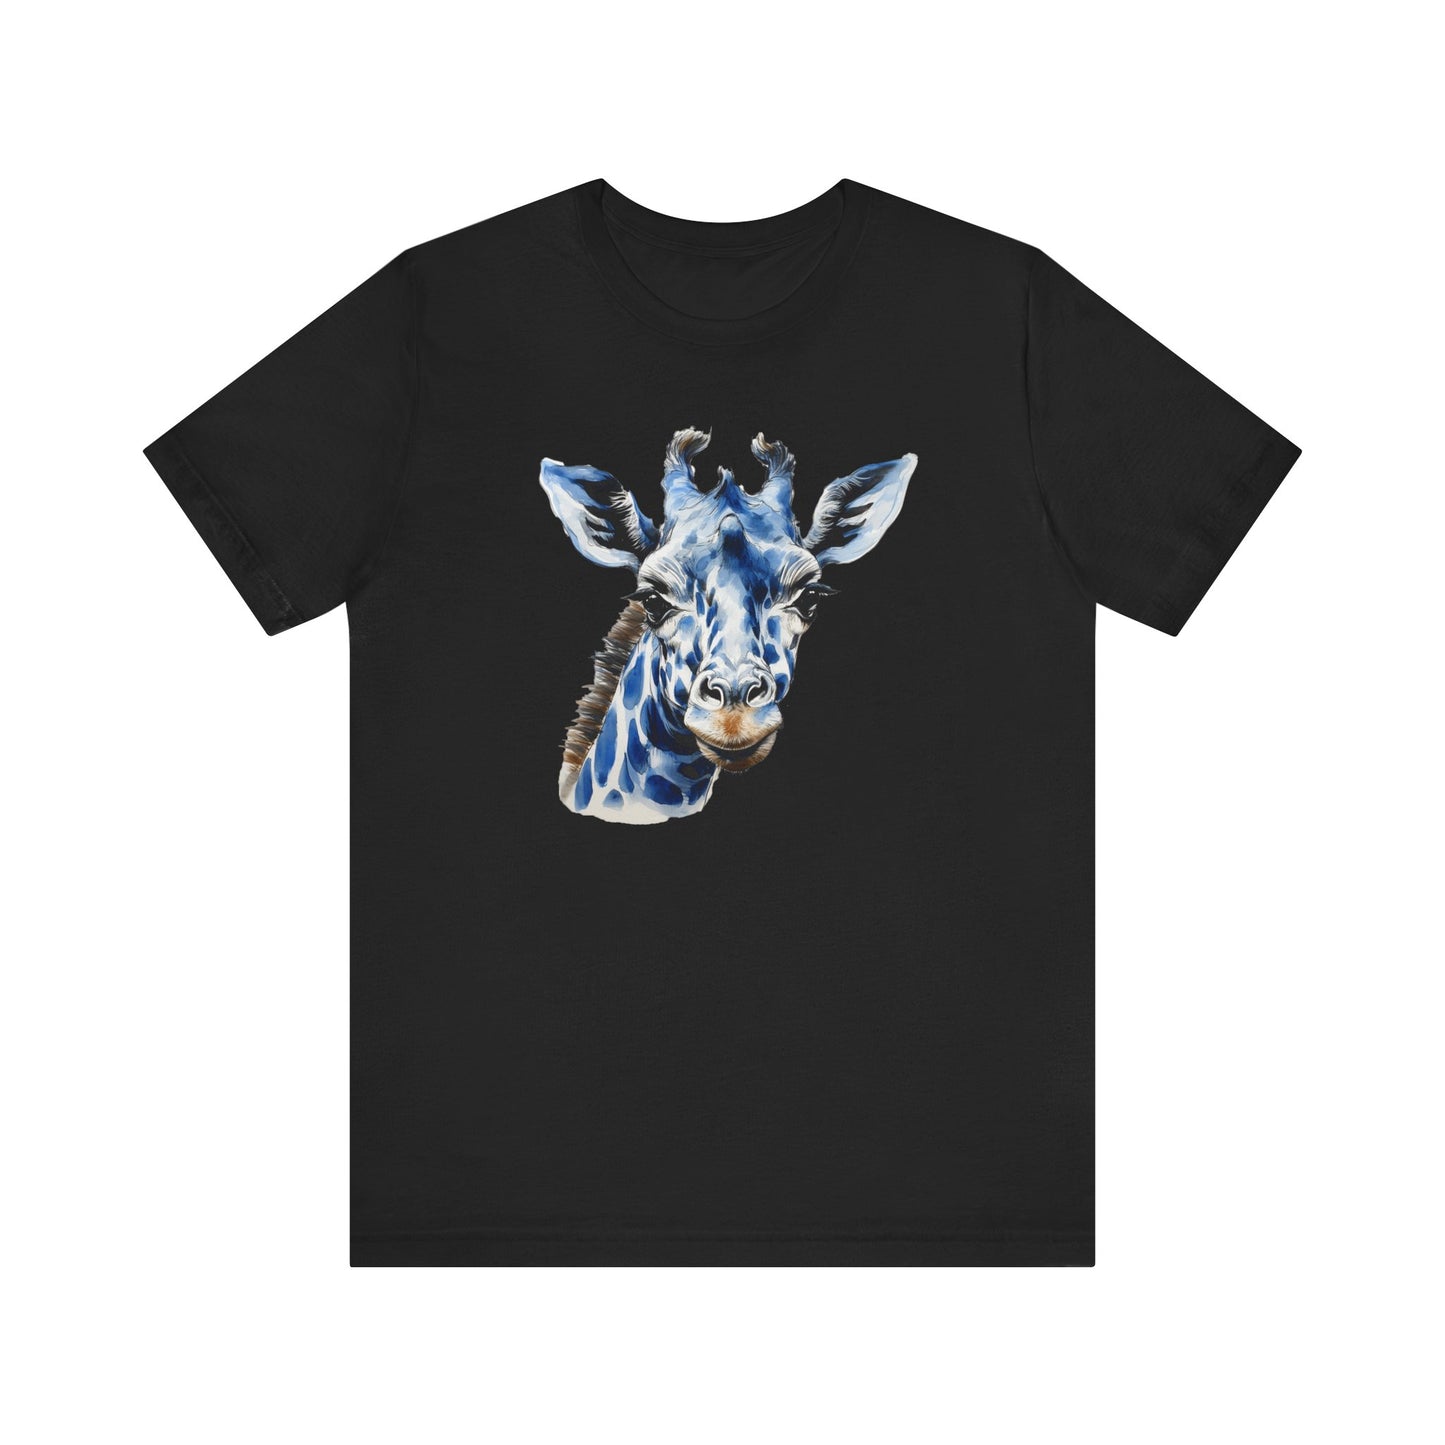 Blue Giraffe Unisex Jersey Short Sleeve Tee